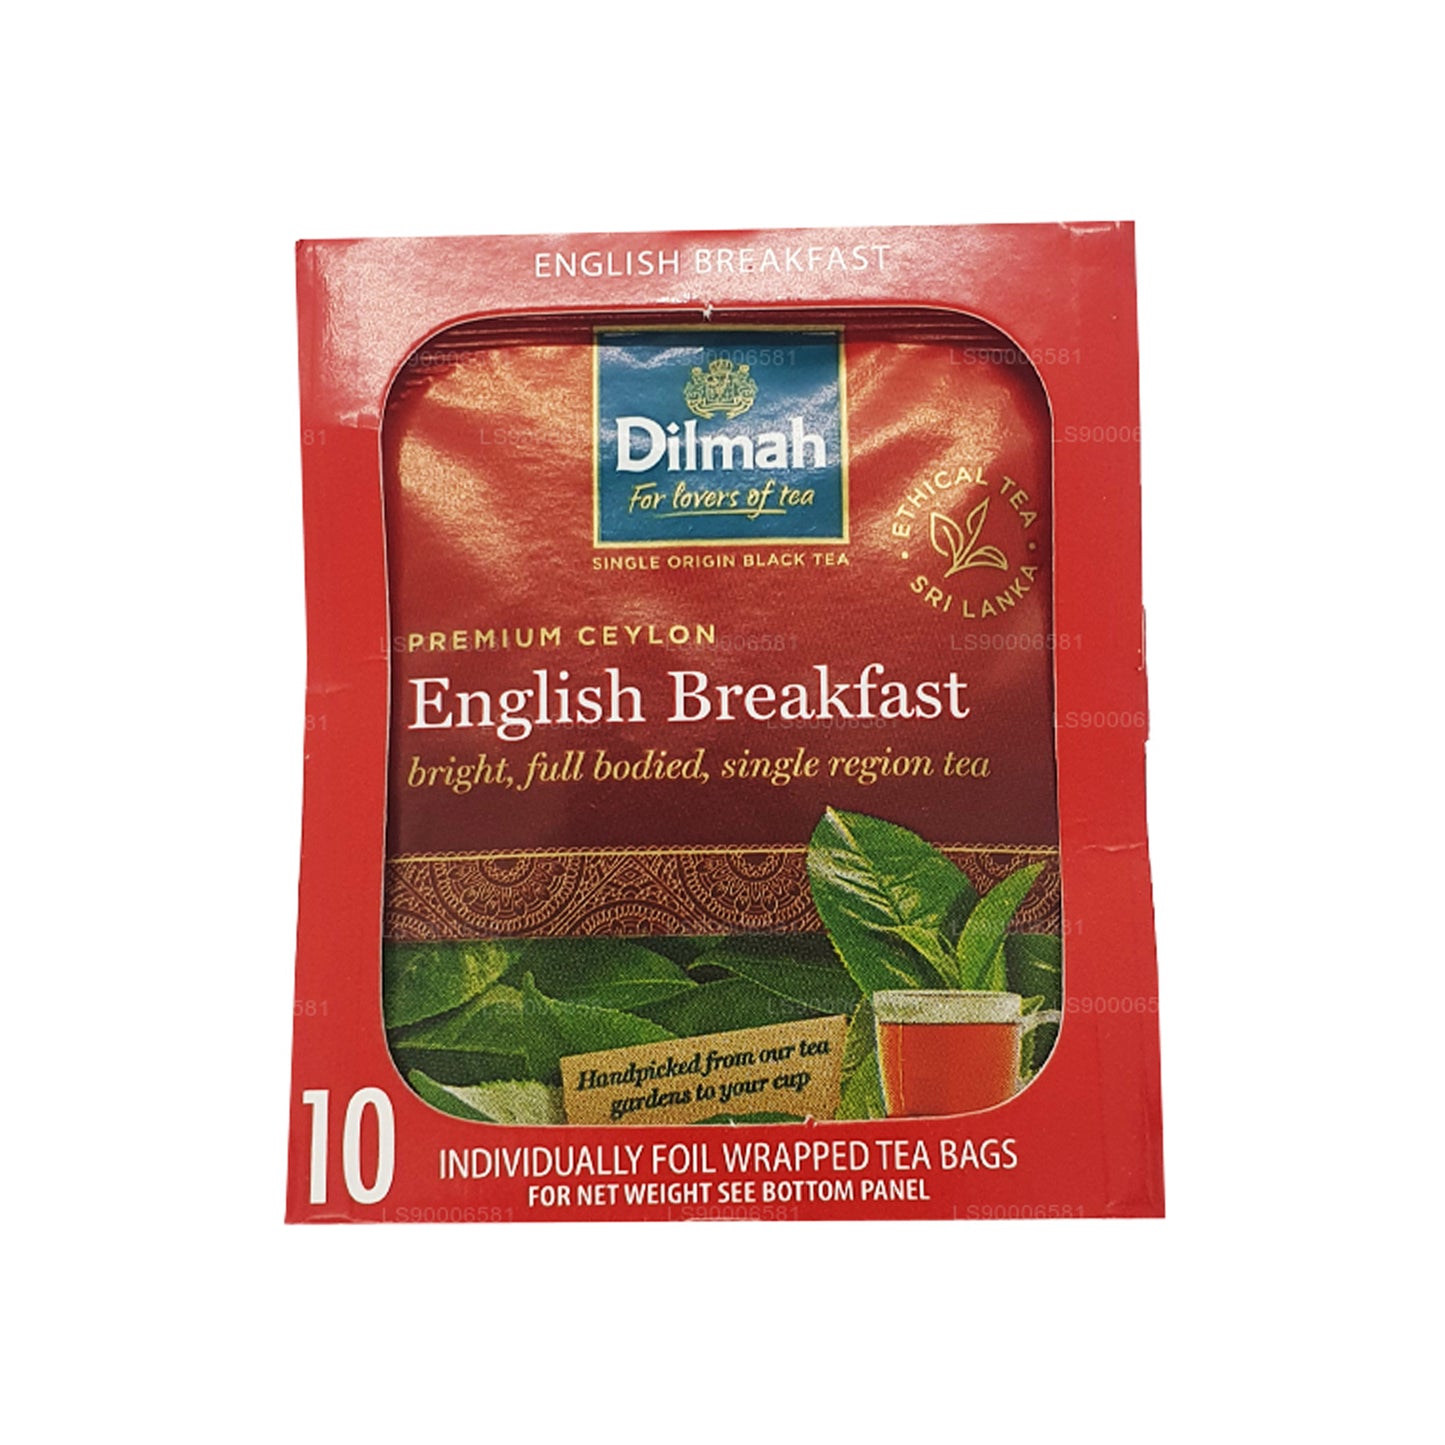 Английский чай для завтрака Dilmah (20 г) 10 чайных пакетиков в индивидуальной упаковке в фольге